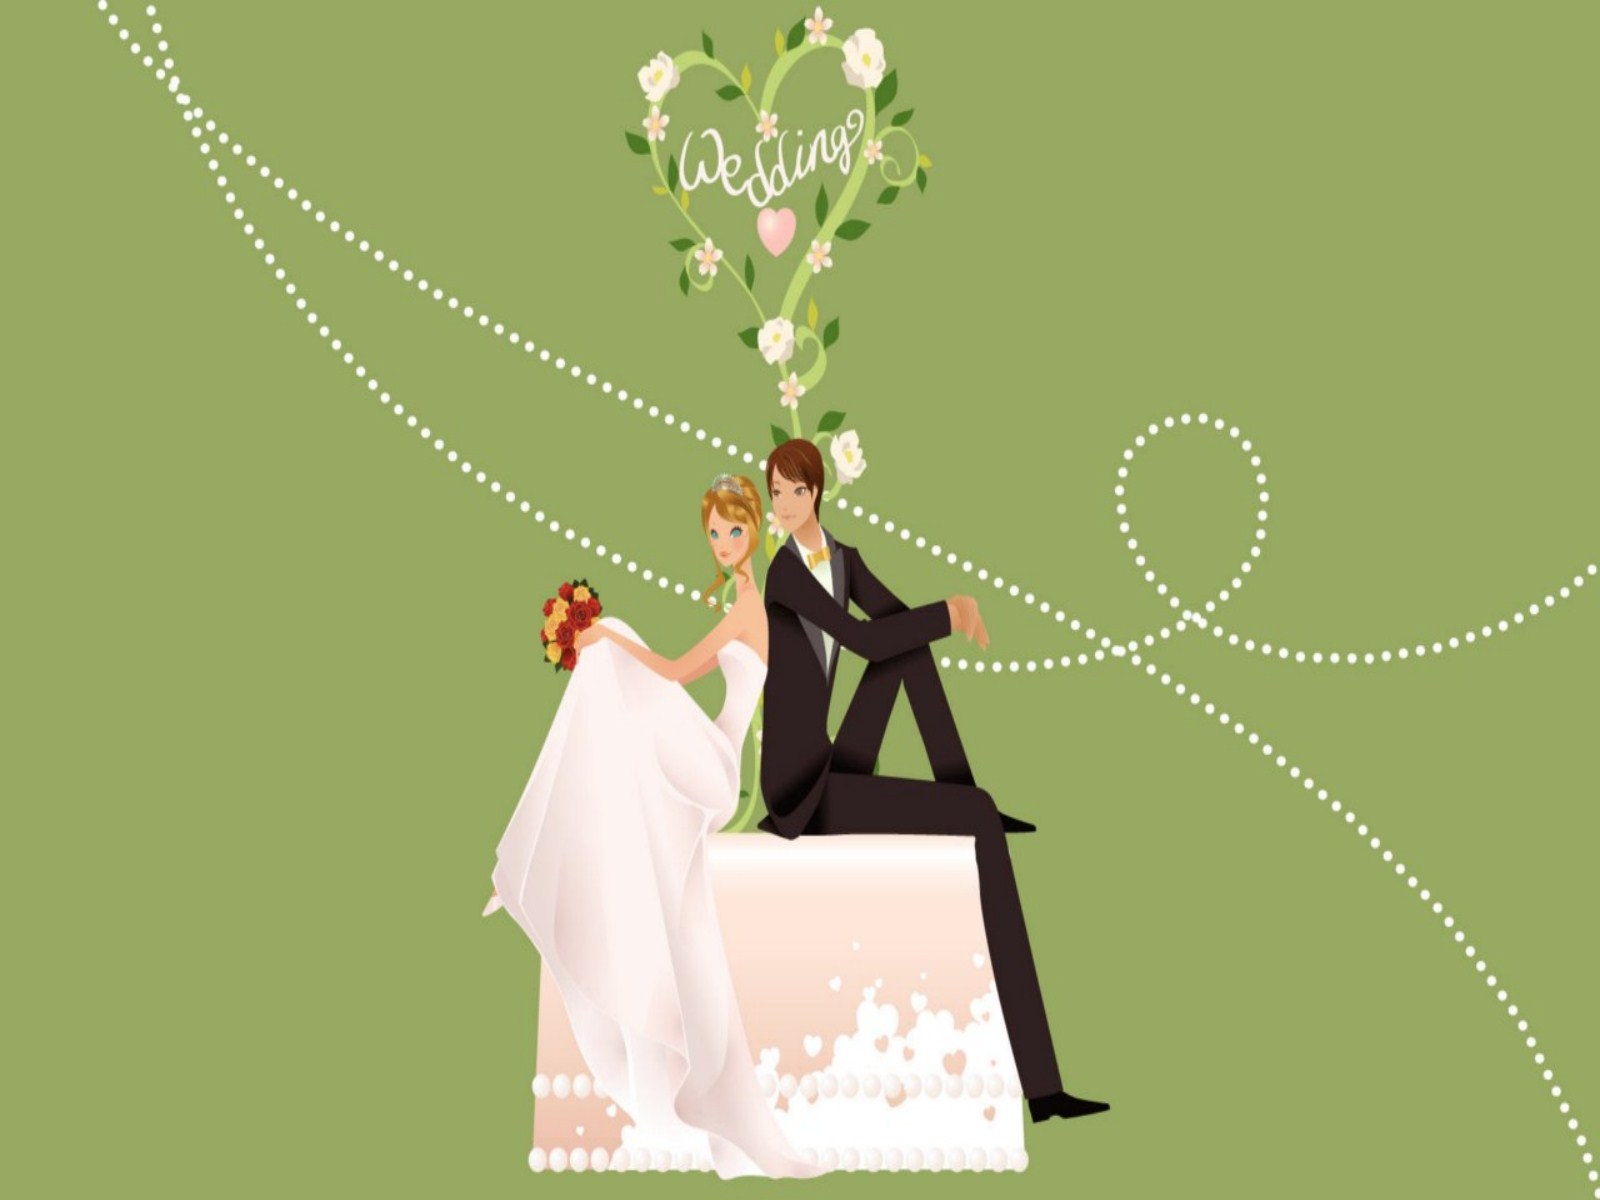 Animated Background For Wedding